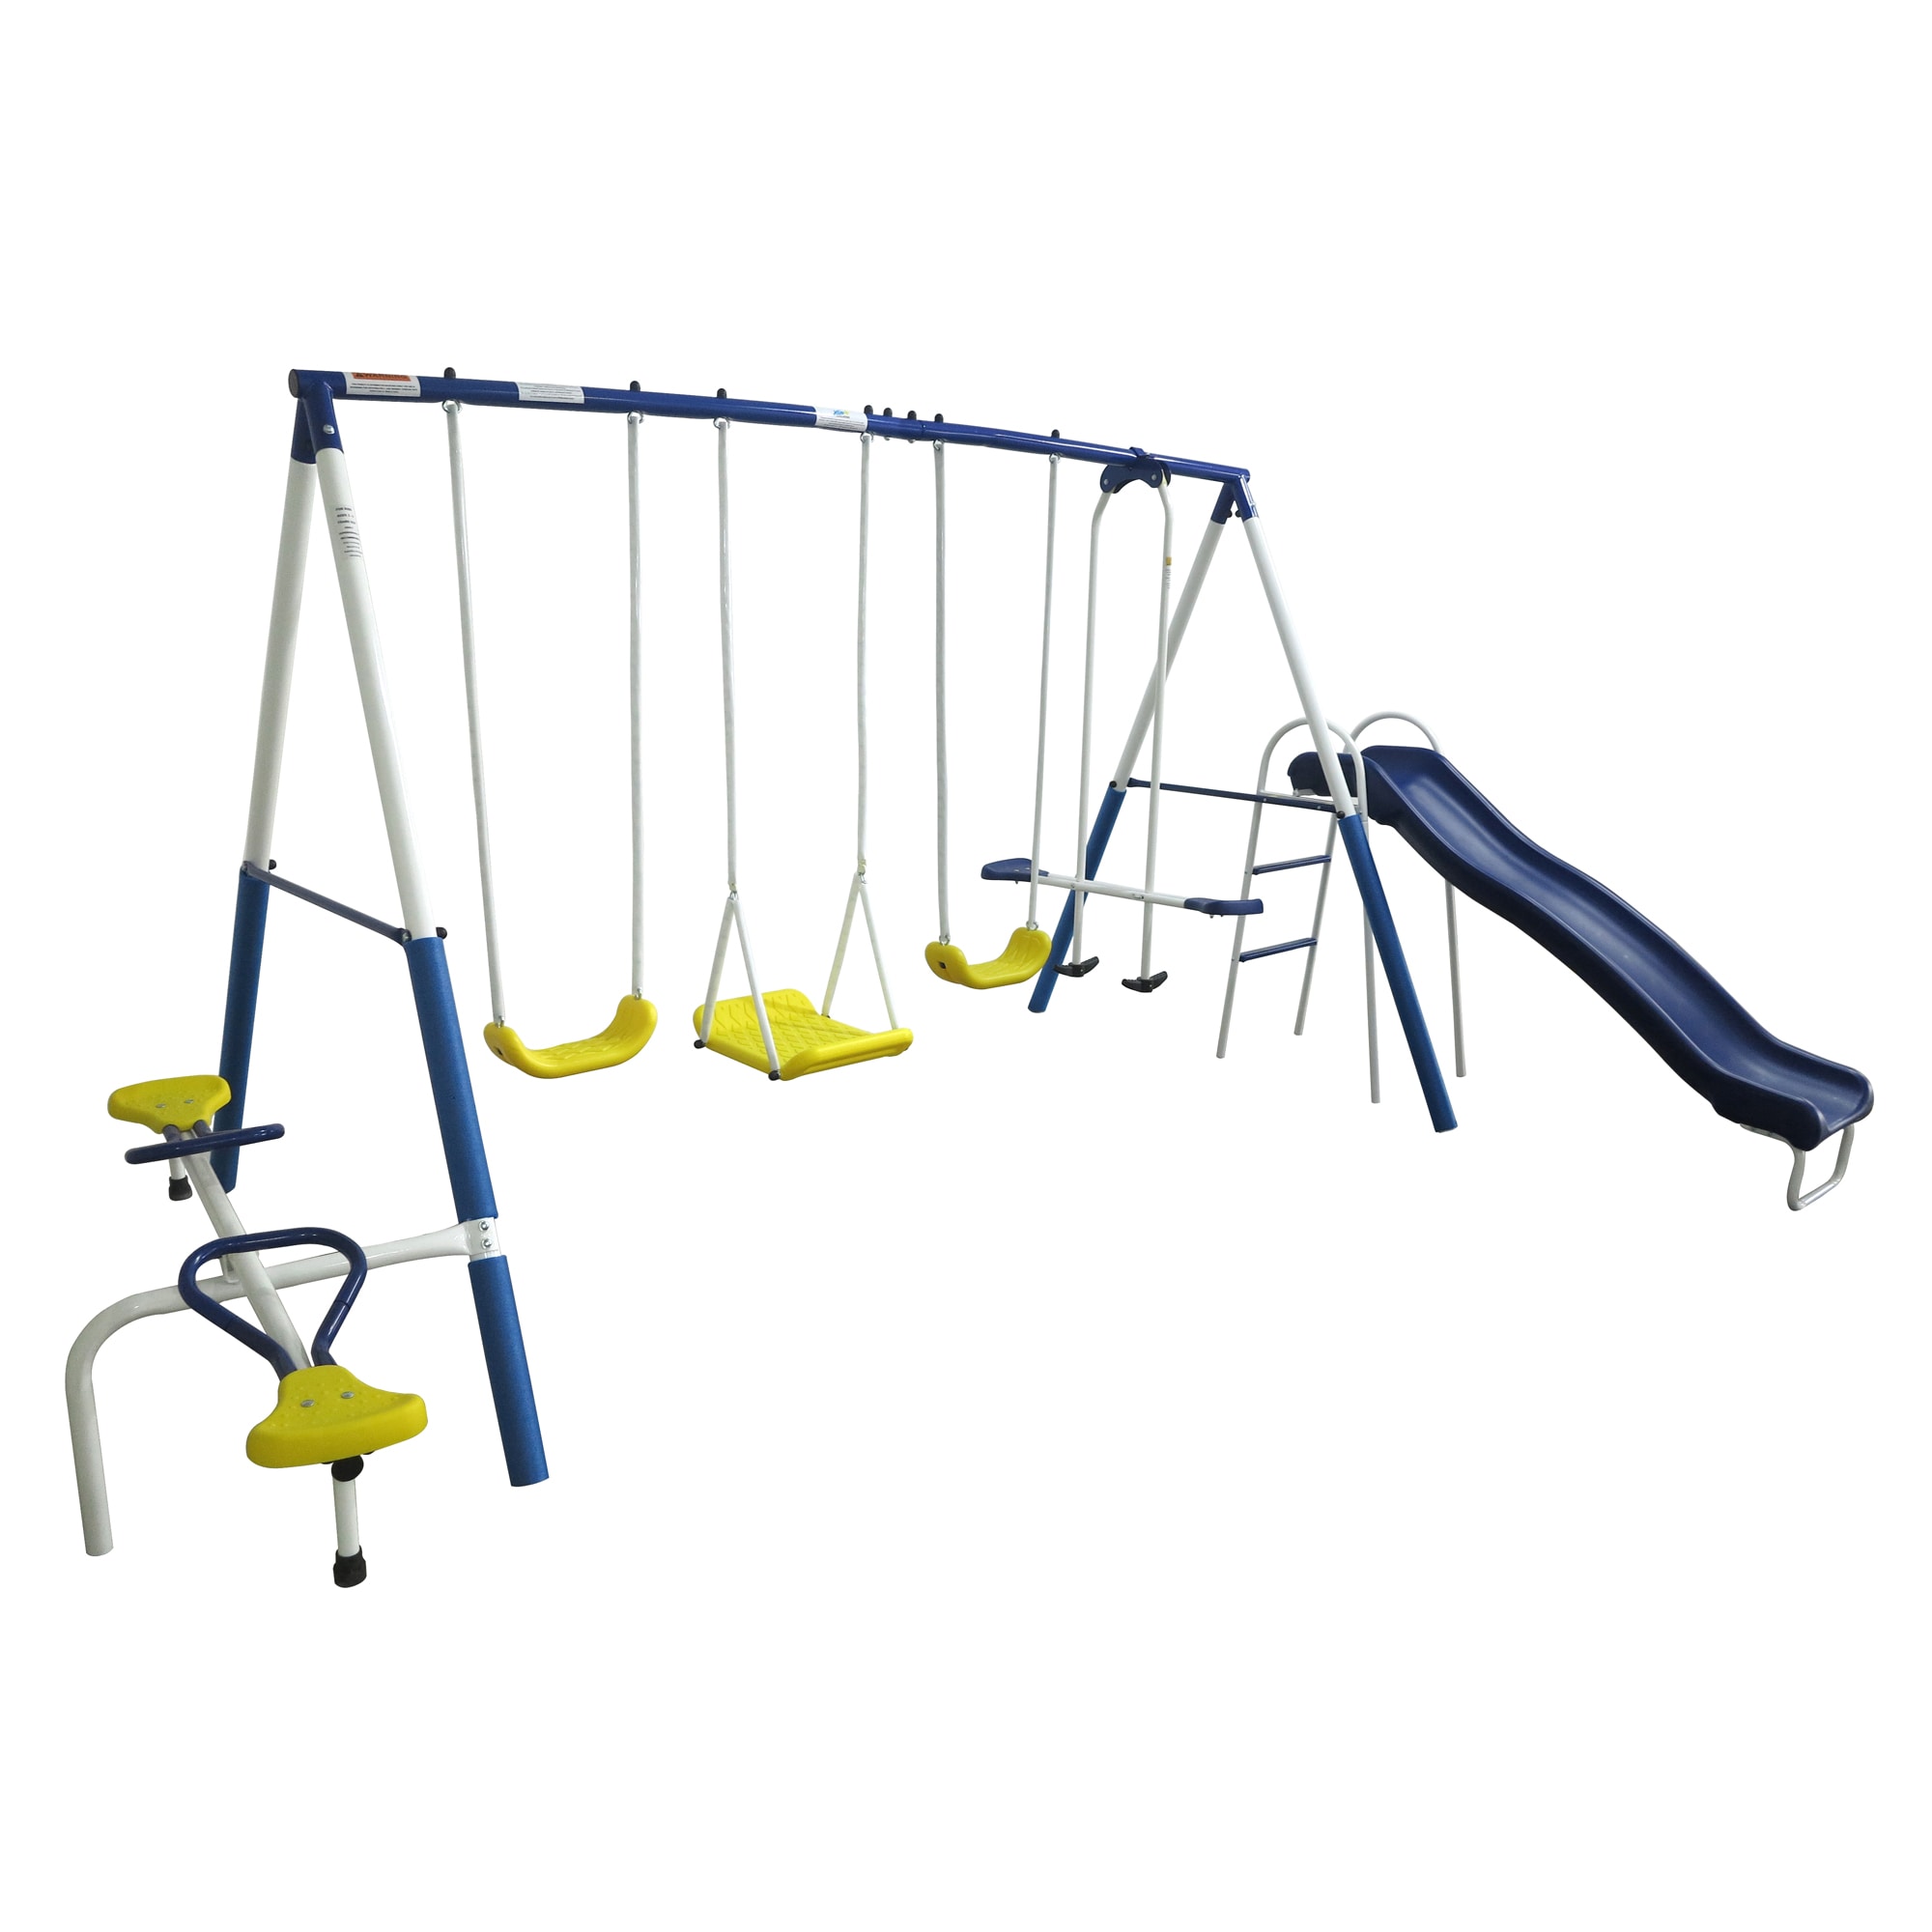 METAL SWING SET Kids Playground Slide Outdoor Backyard Playset 